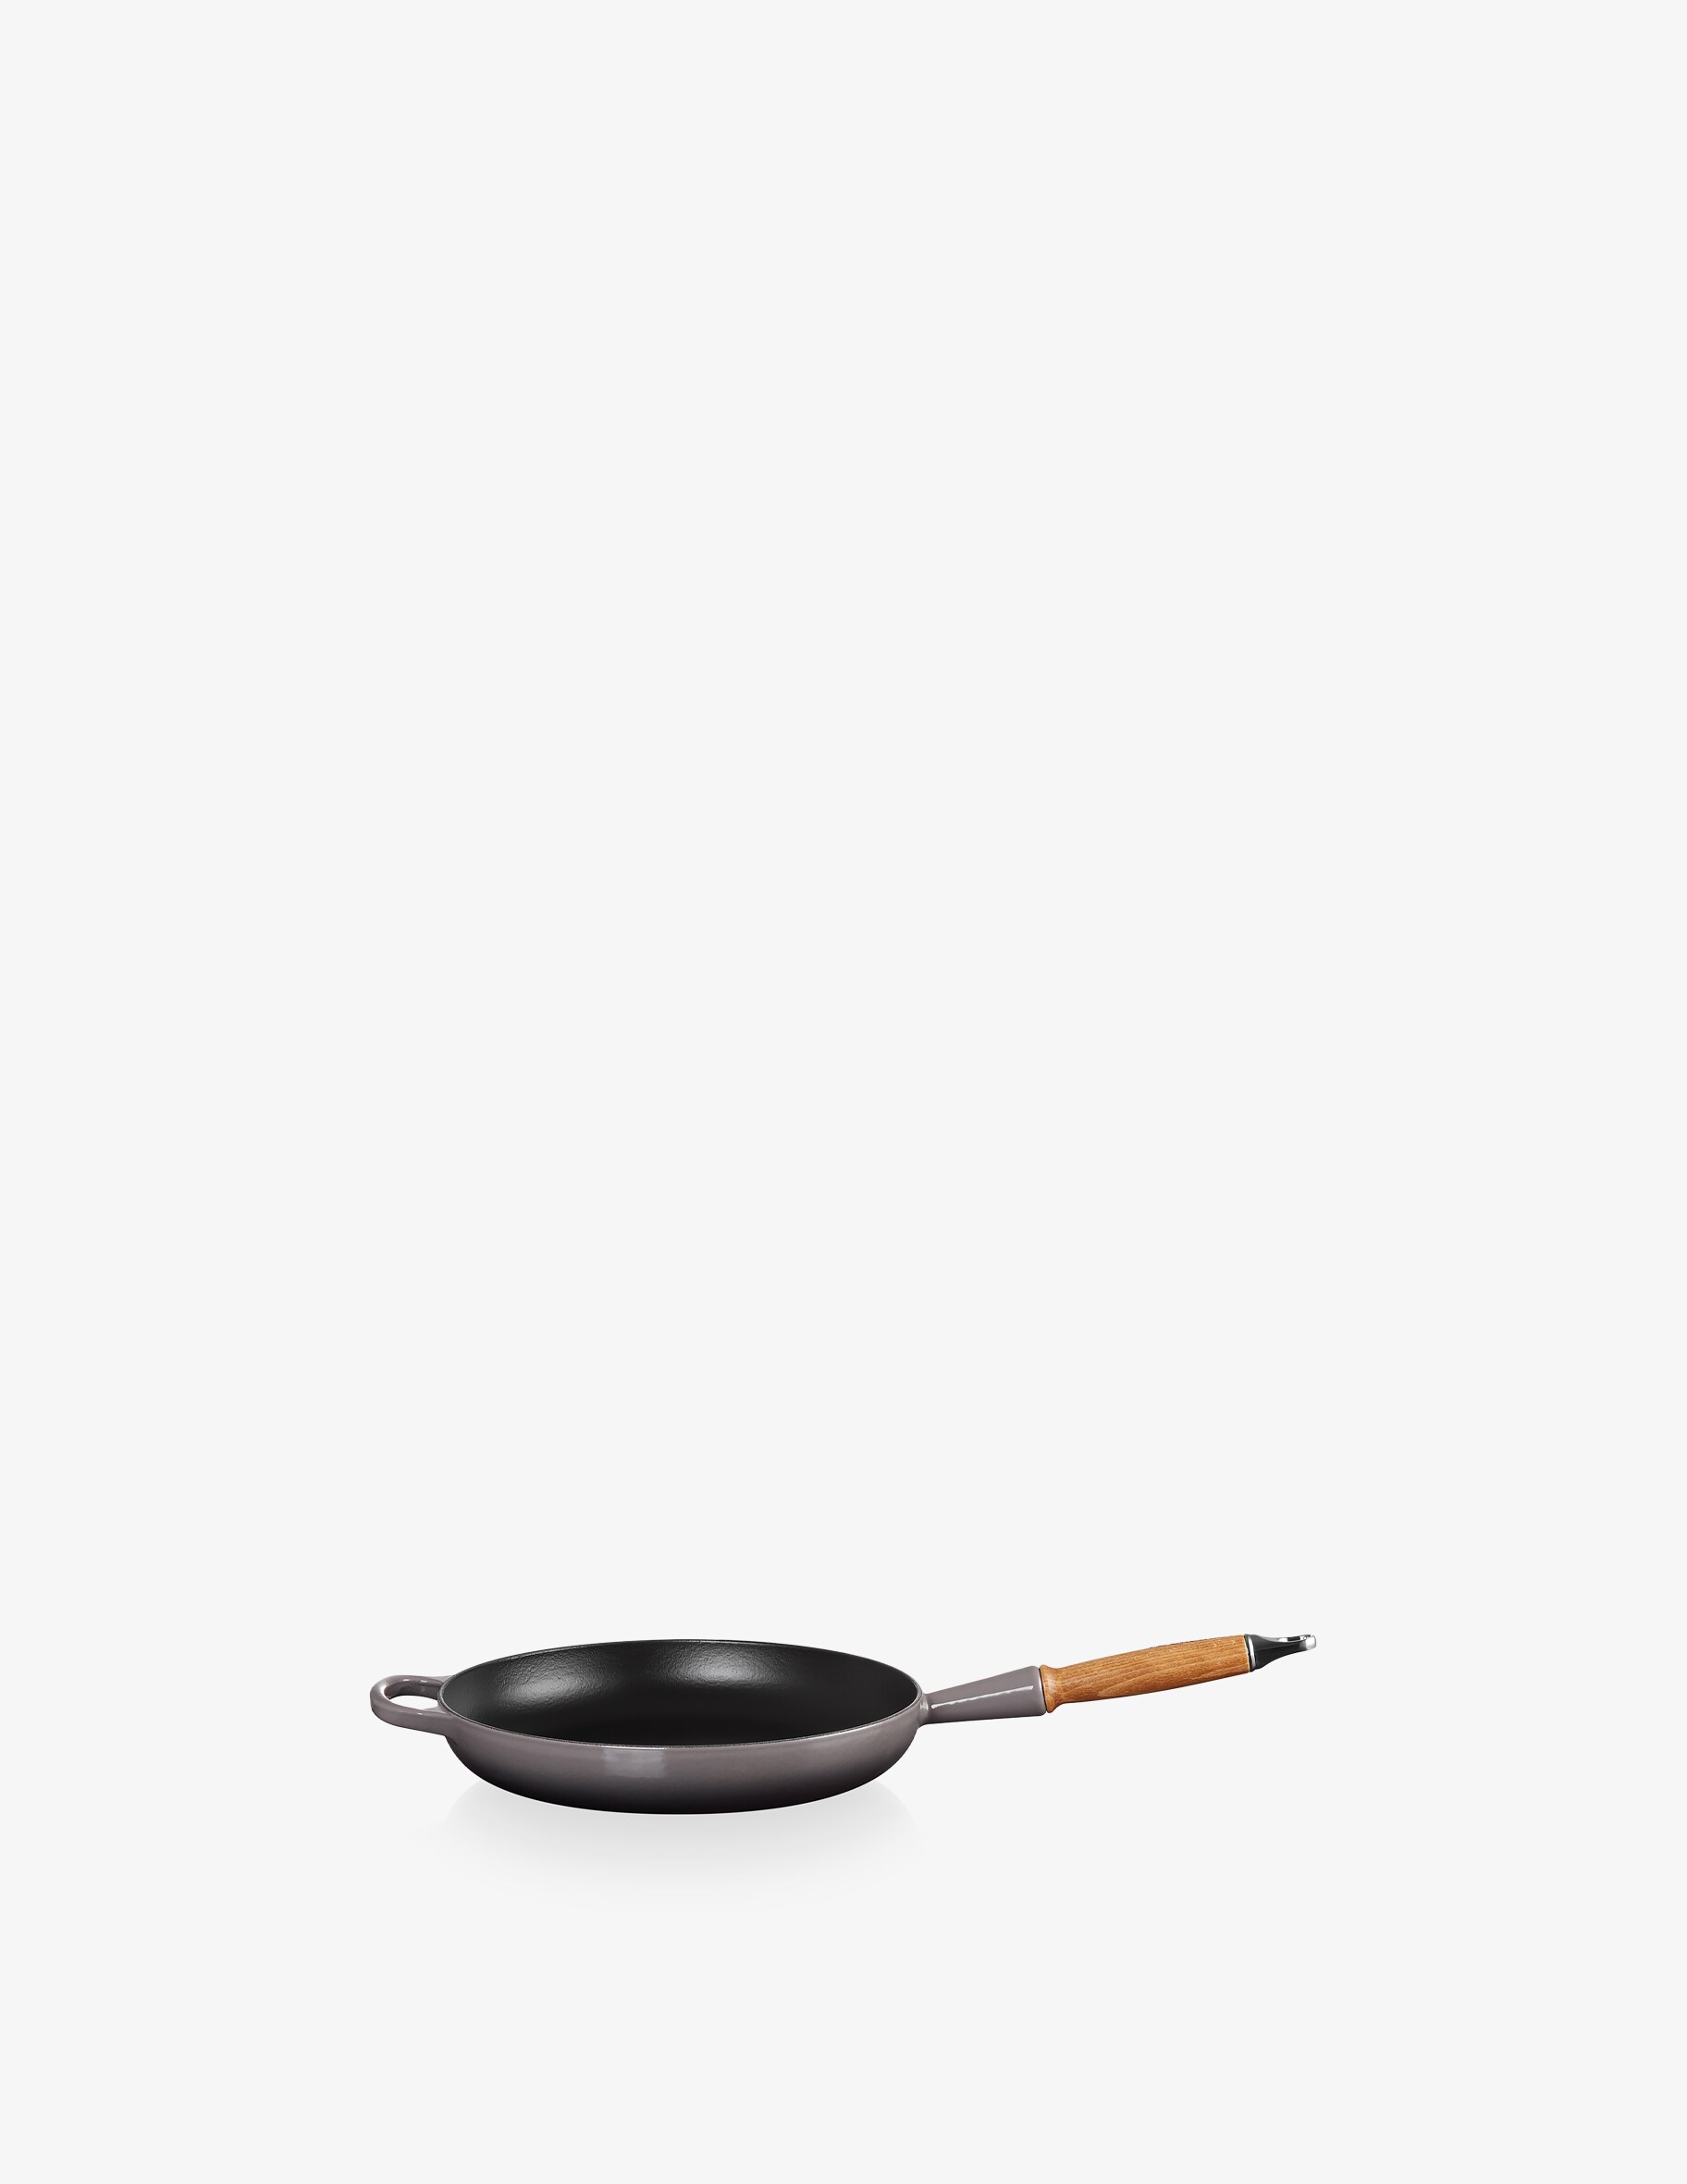 Фирменная сковорода с деревянной ручкой Le Creuset, цвет Flint